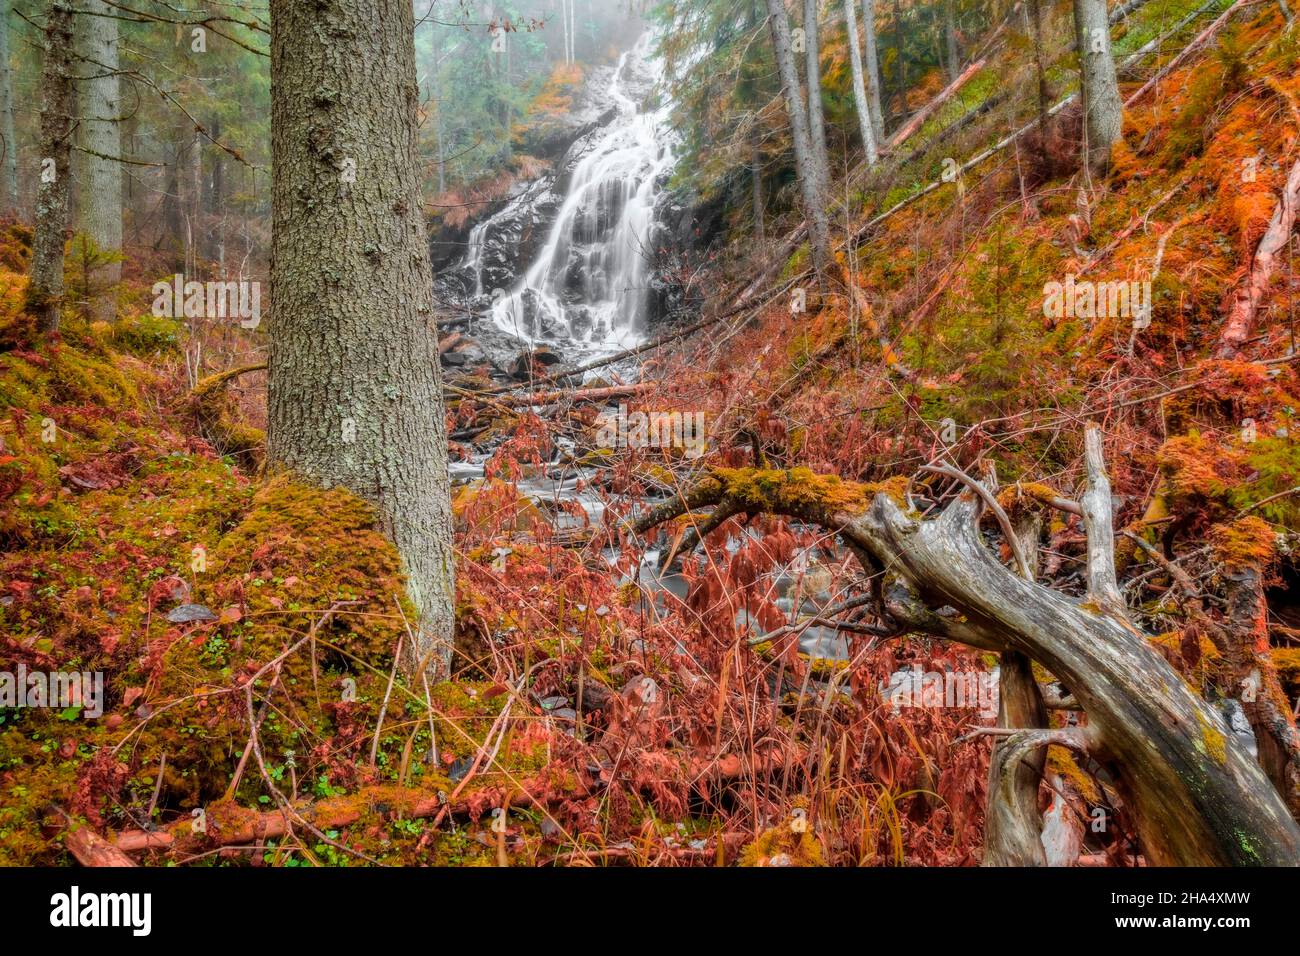 alberi cadenti con una cascata in una foresta, paesaggio autunnale in toni rossi Foto Stock